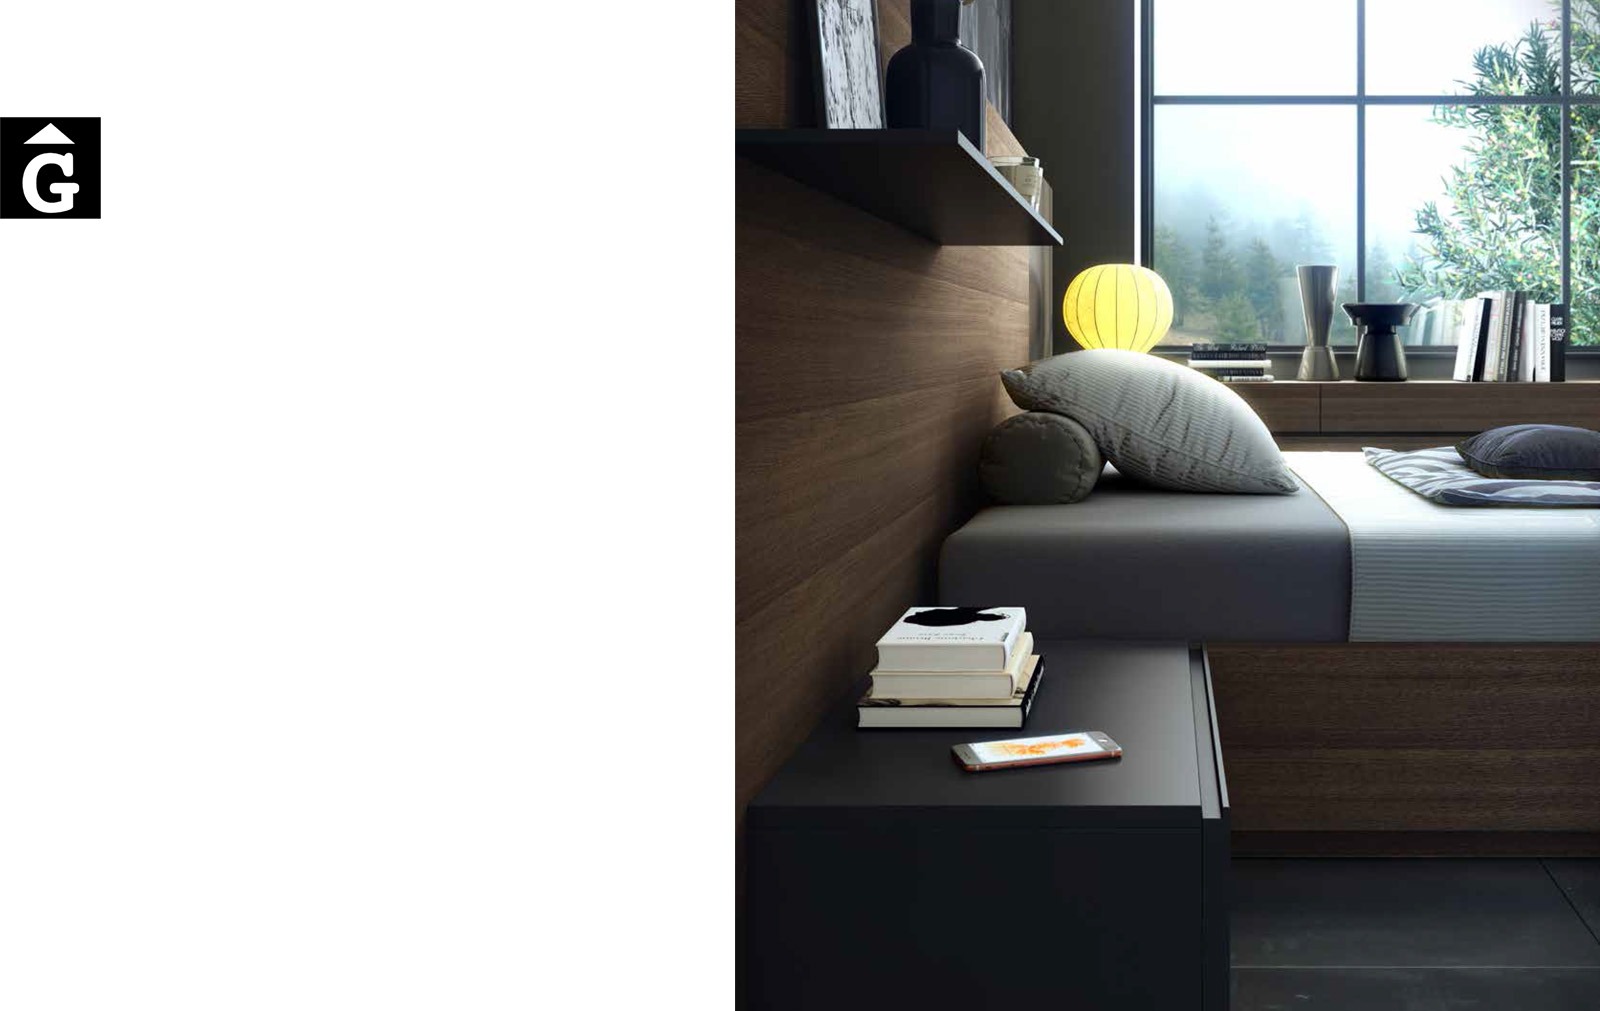 22 0 Area mobles Ciurans per mobles Gifreu programa modular disseny atemporal realitzat amb materials i ferratges de qualitat estil modern minimal